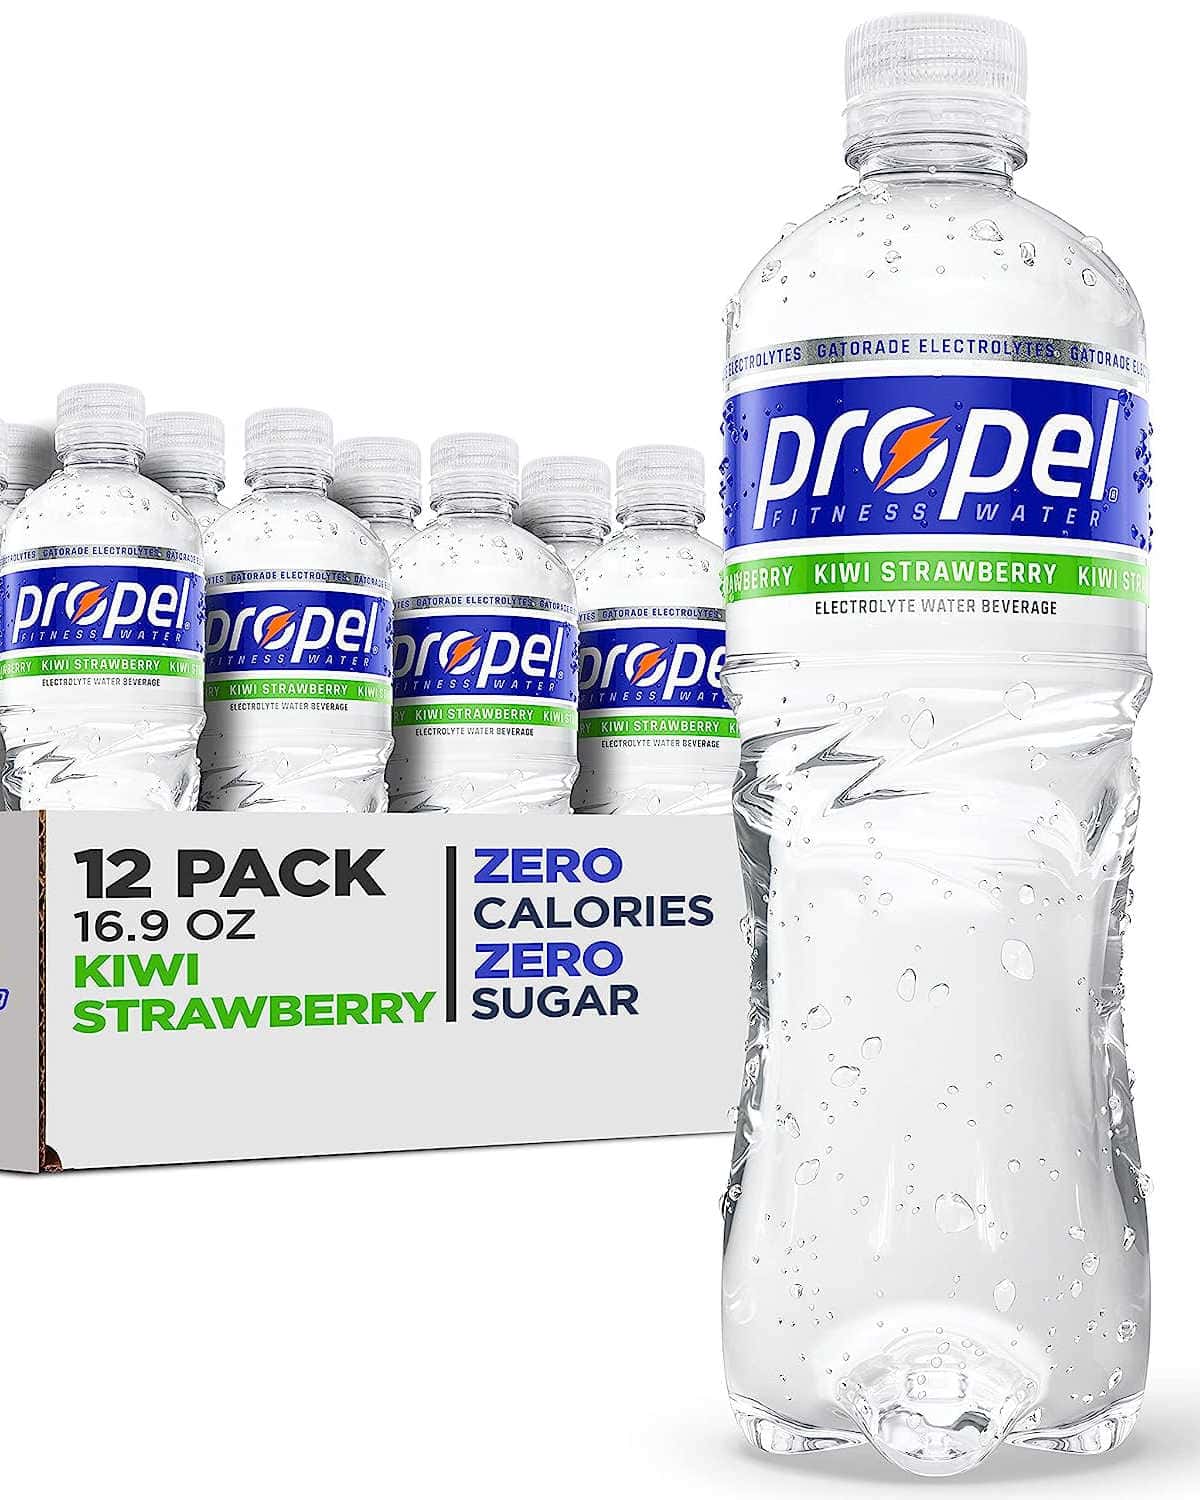 Propel water bottle drink is it healthy.